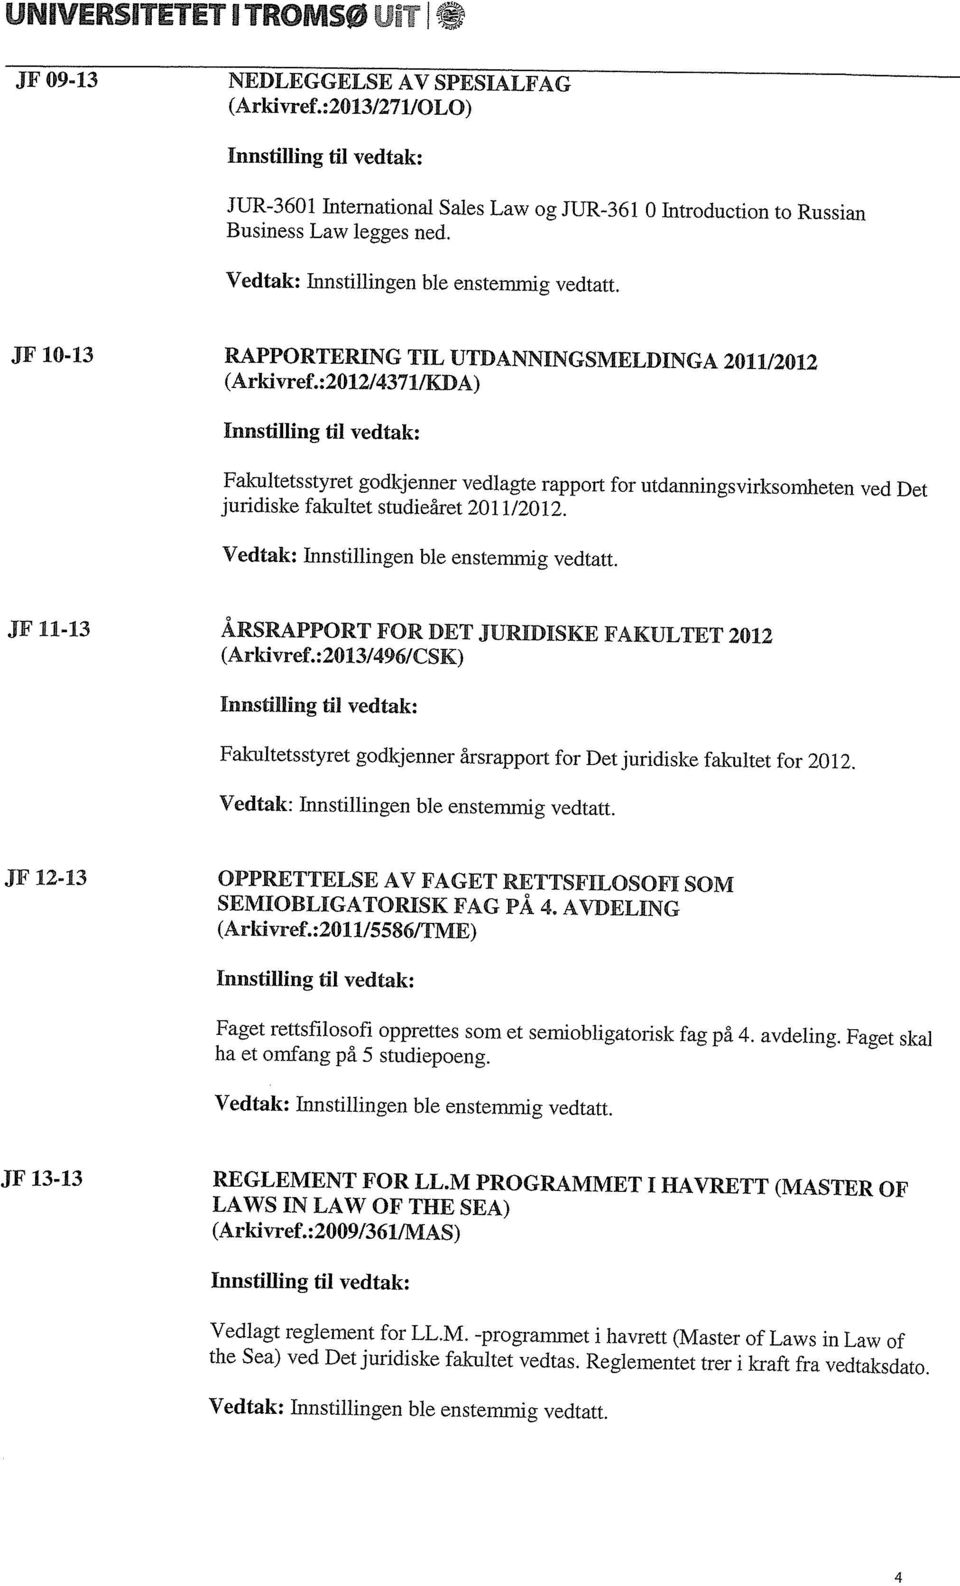 JF 10-13 RAPPORTERING TIL UTDANNINGSMELJMNGA 2011/2012 (Arkivref.